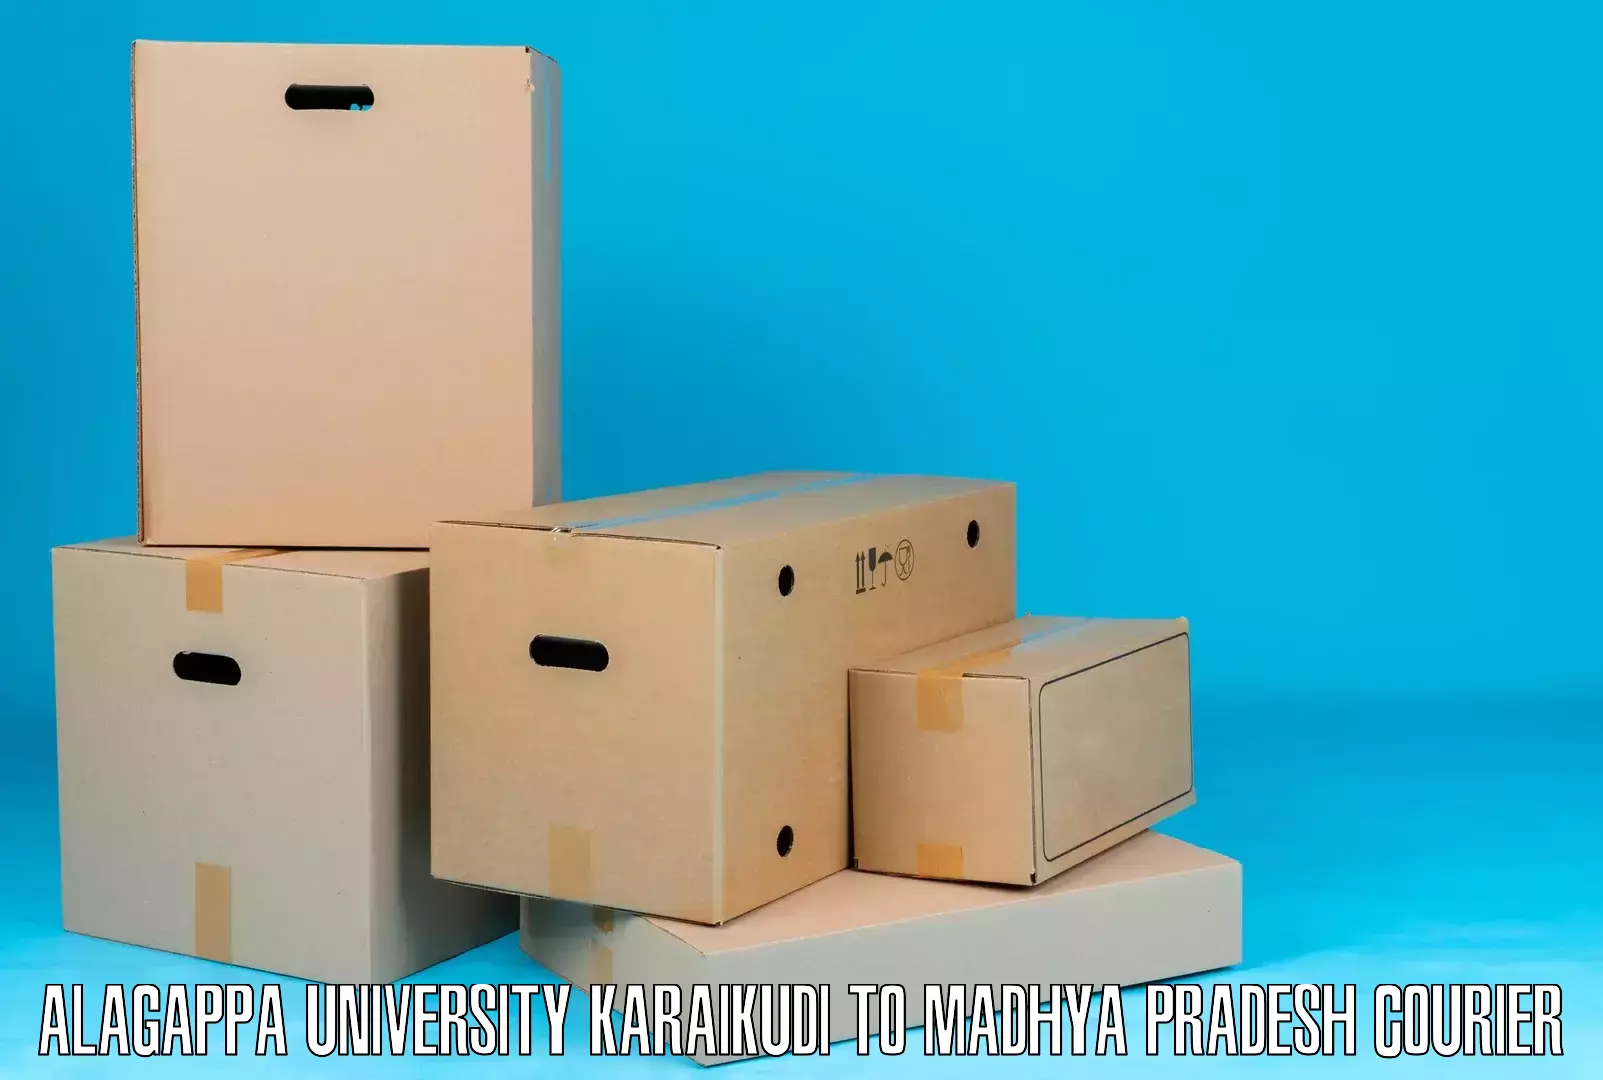 Professional courier handling Alagappa University Karaikudi to Majhgawa